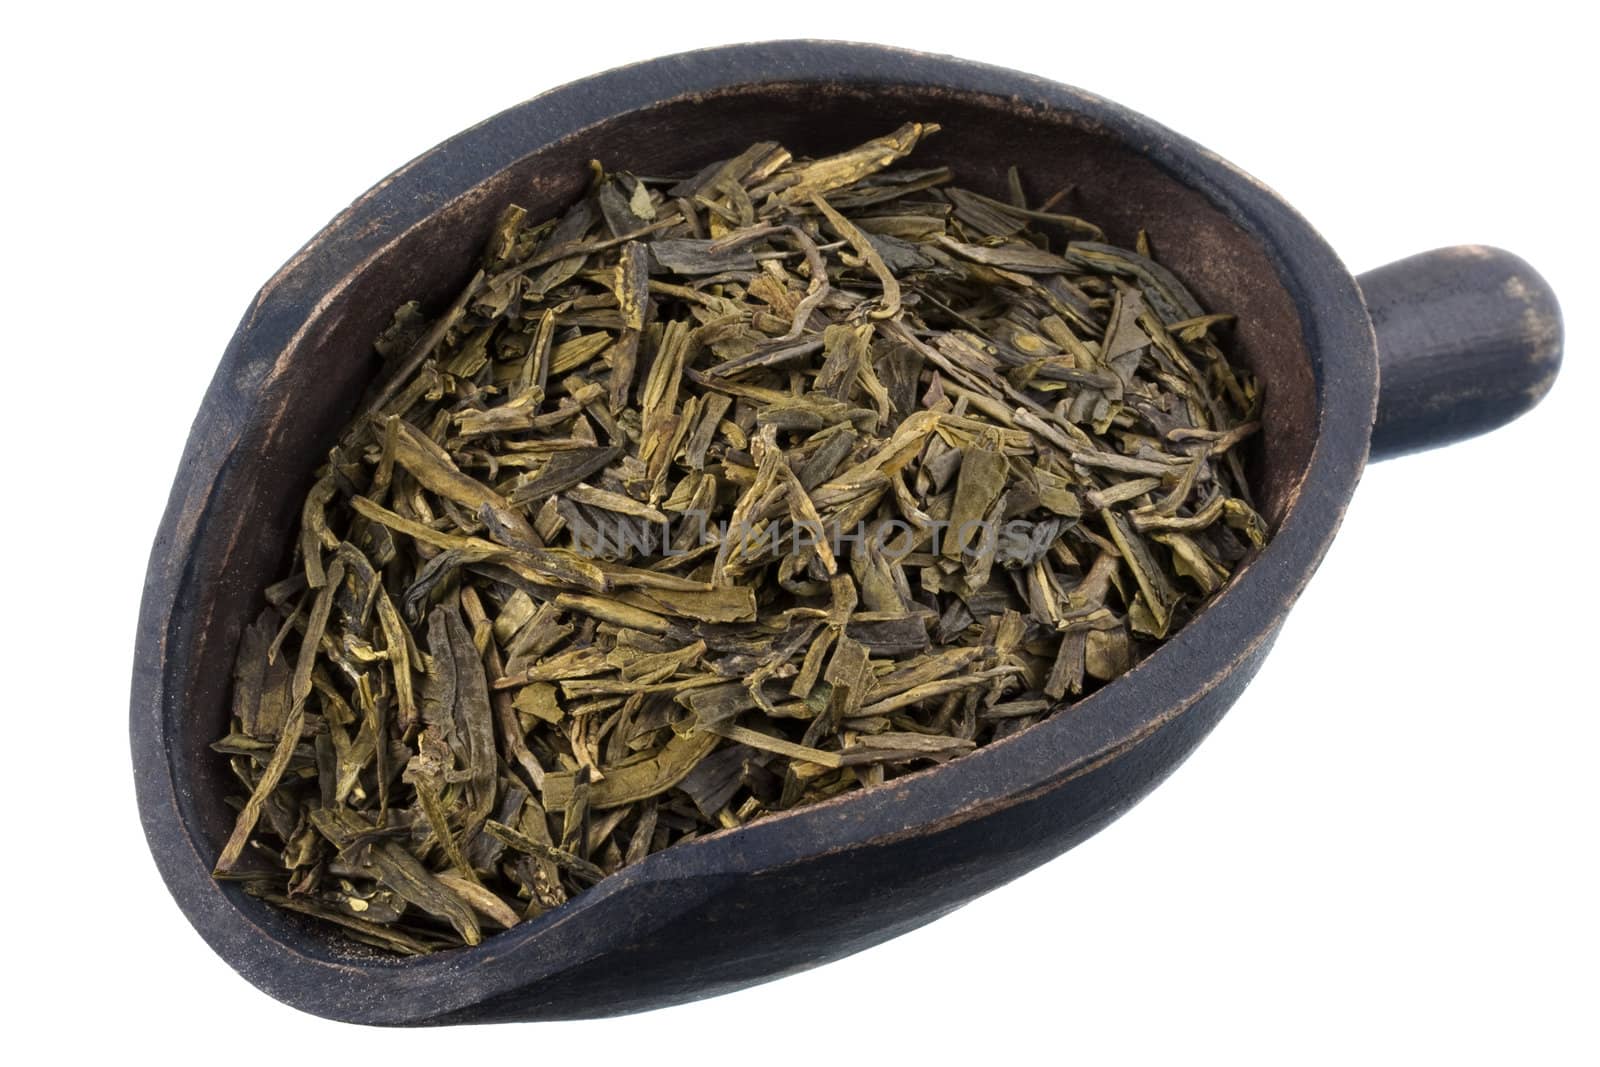 scoop of full leaf loose green tea by PixelsAway